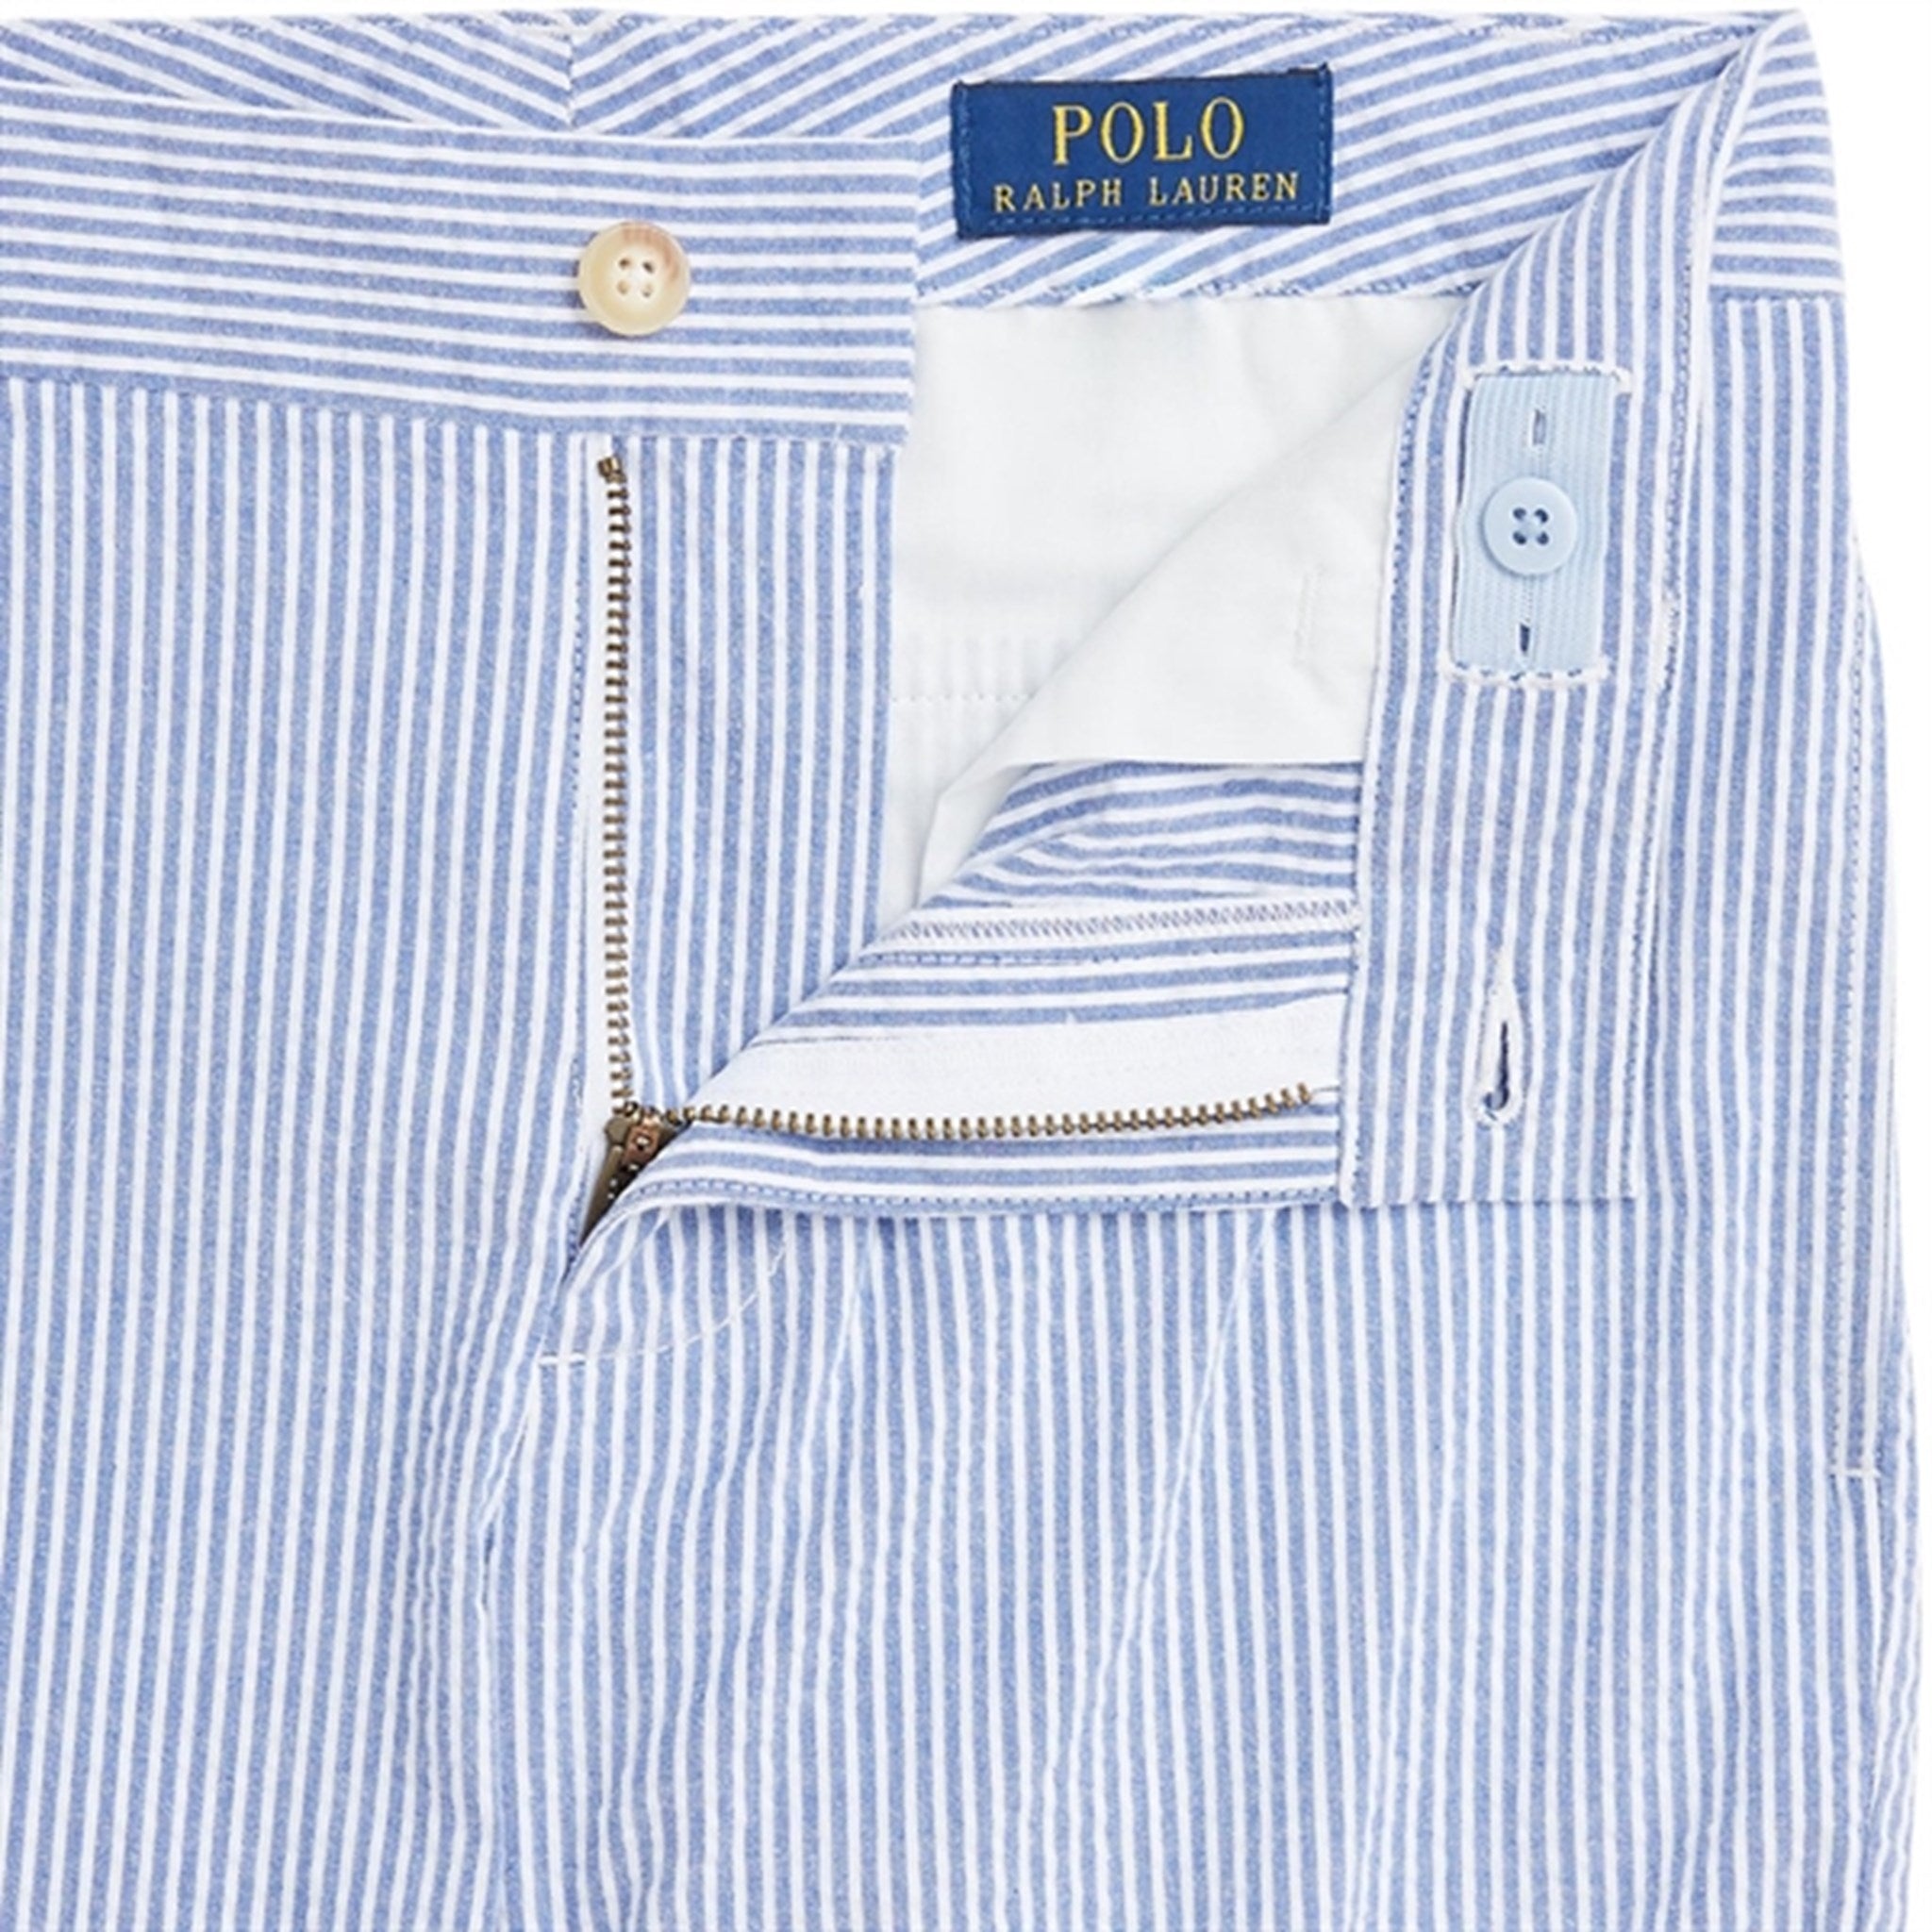 Polo Ralph Lauren Boy Pants Blue/White Multi 2